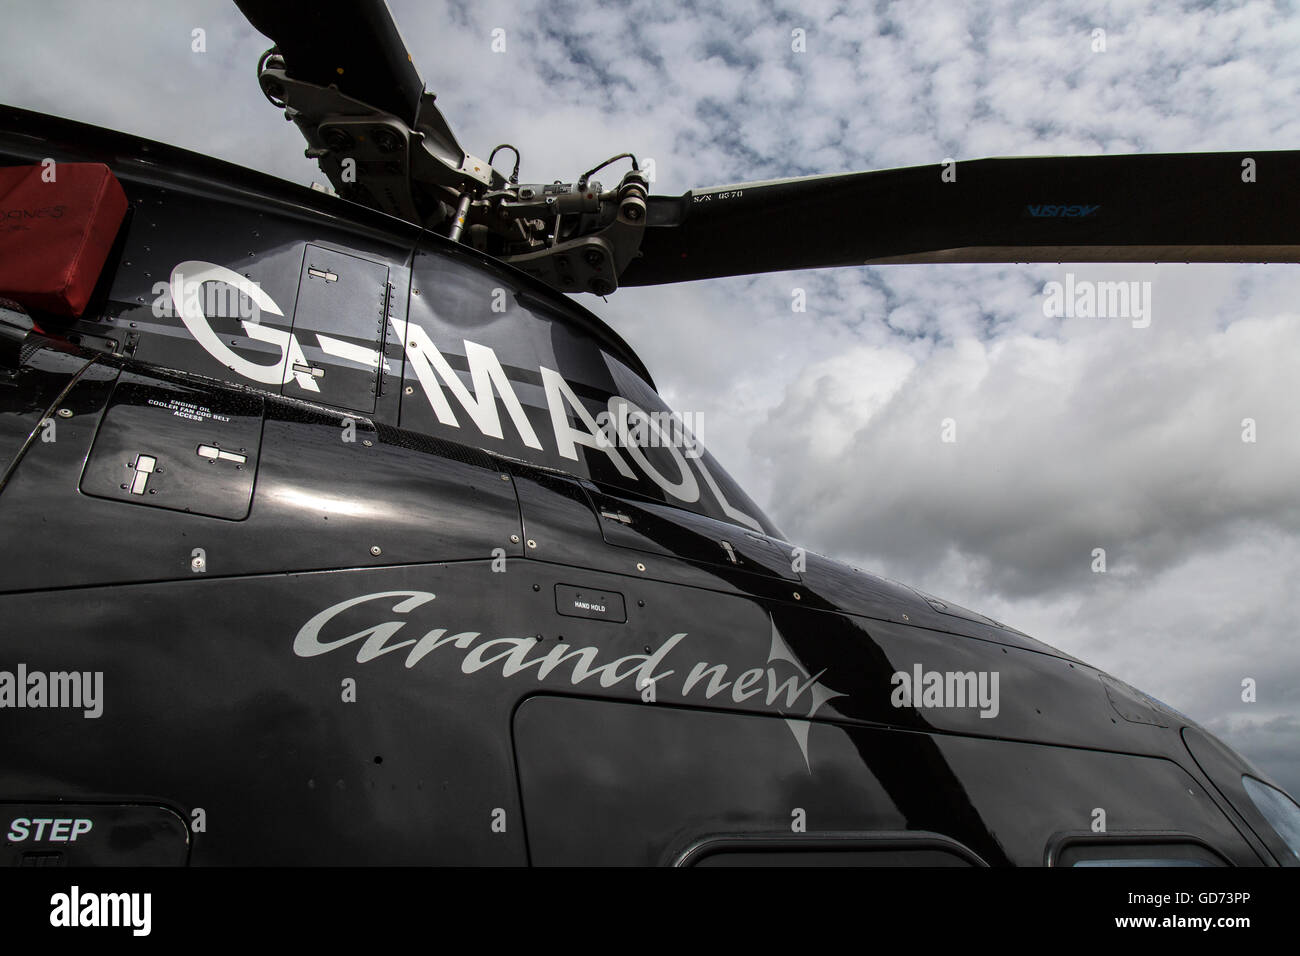 Detail von Rotor und Nabe von einem AgustaWestland (Leonardo-Finmeccanica) AW109SP Grandnew Heliocopter, G-MAOL. Stockfoto